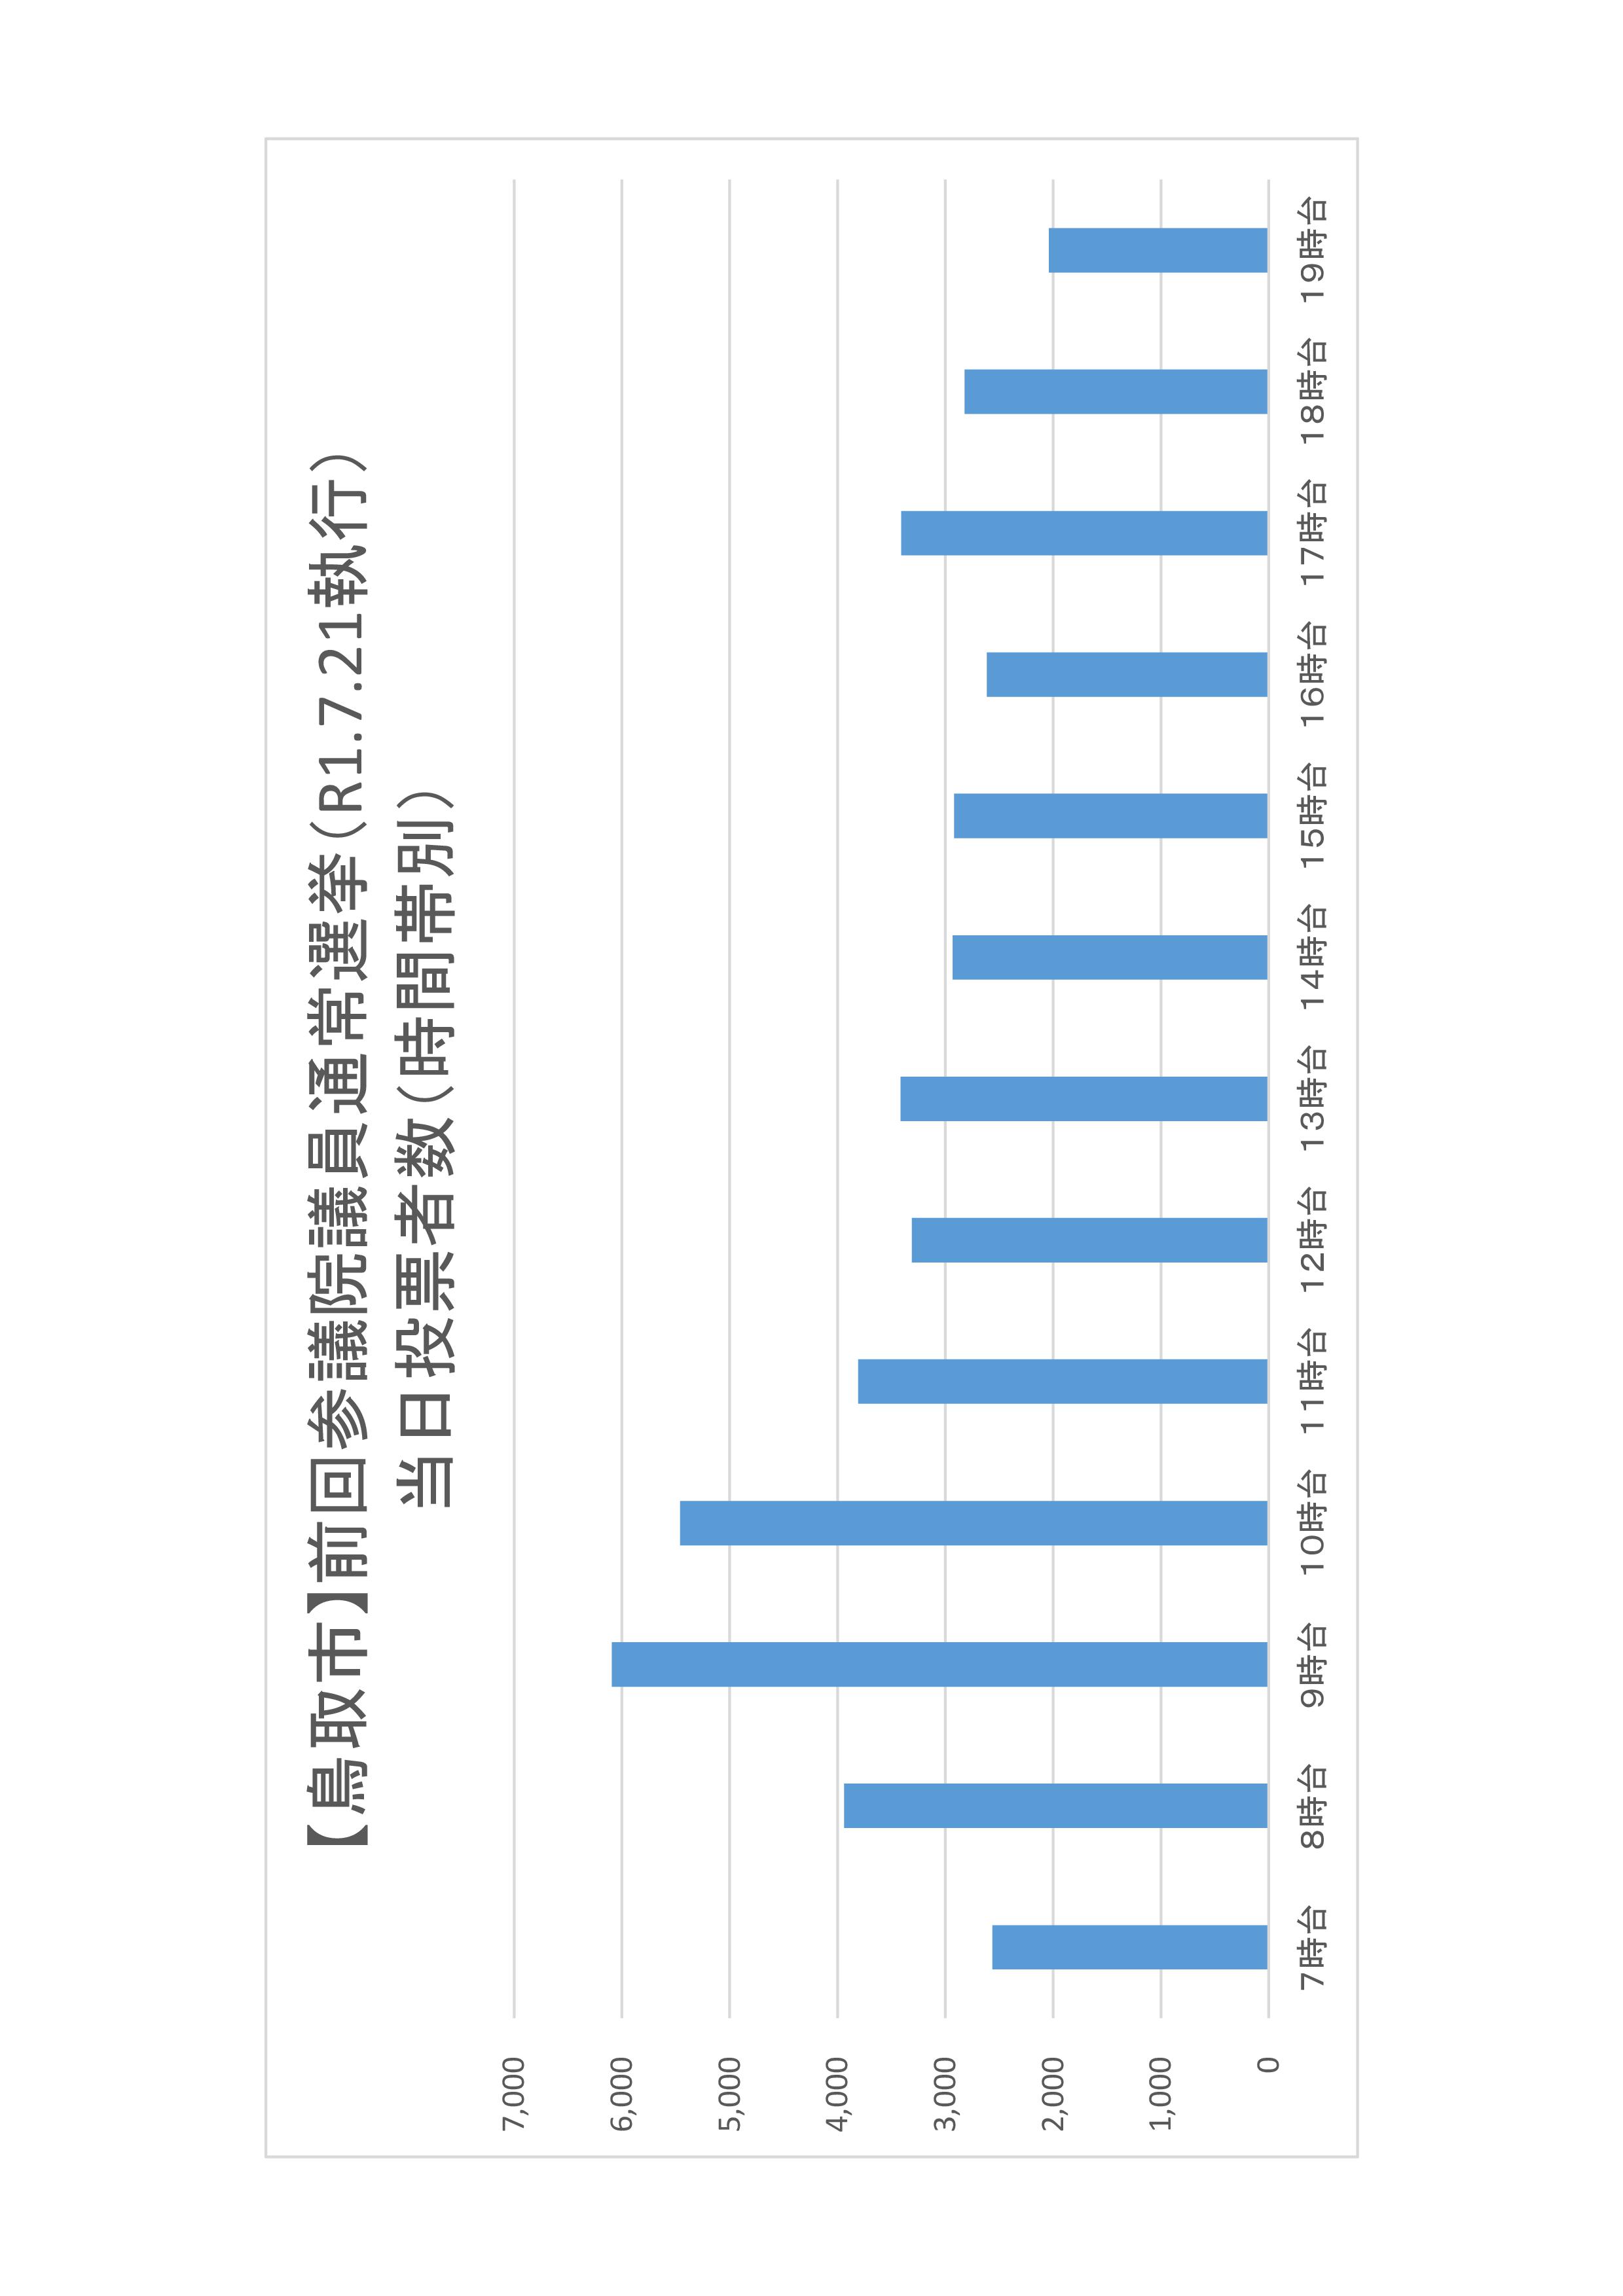 鳥取市の時間帯別当日投票者数のグラフ